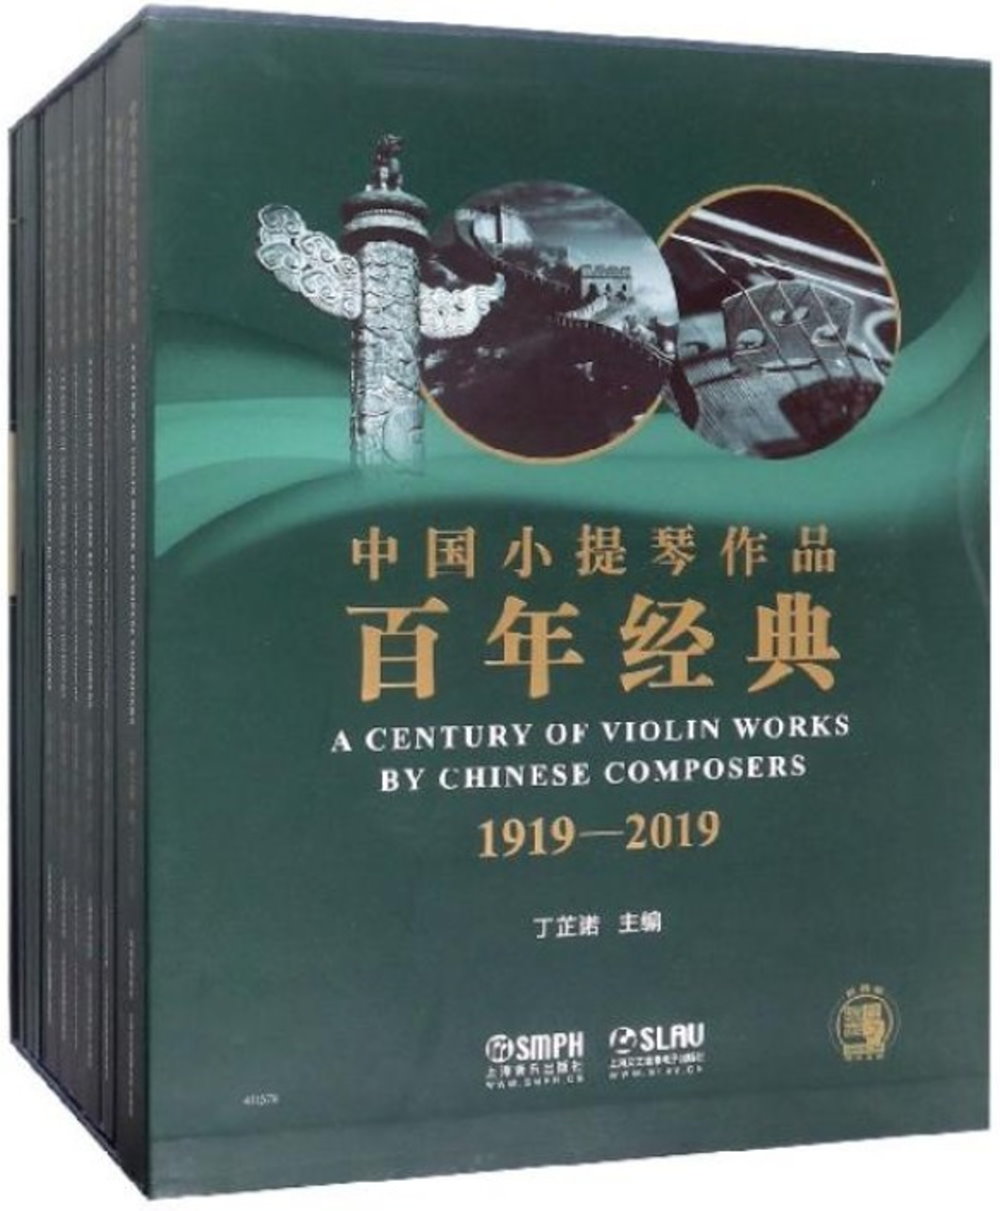 中國小提琴作品百年經典套裝(1919-2019 共七卷)